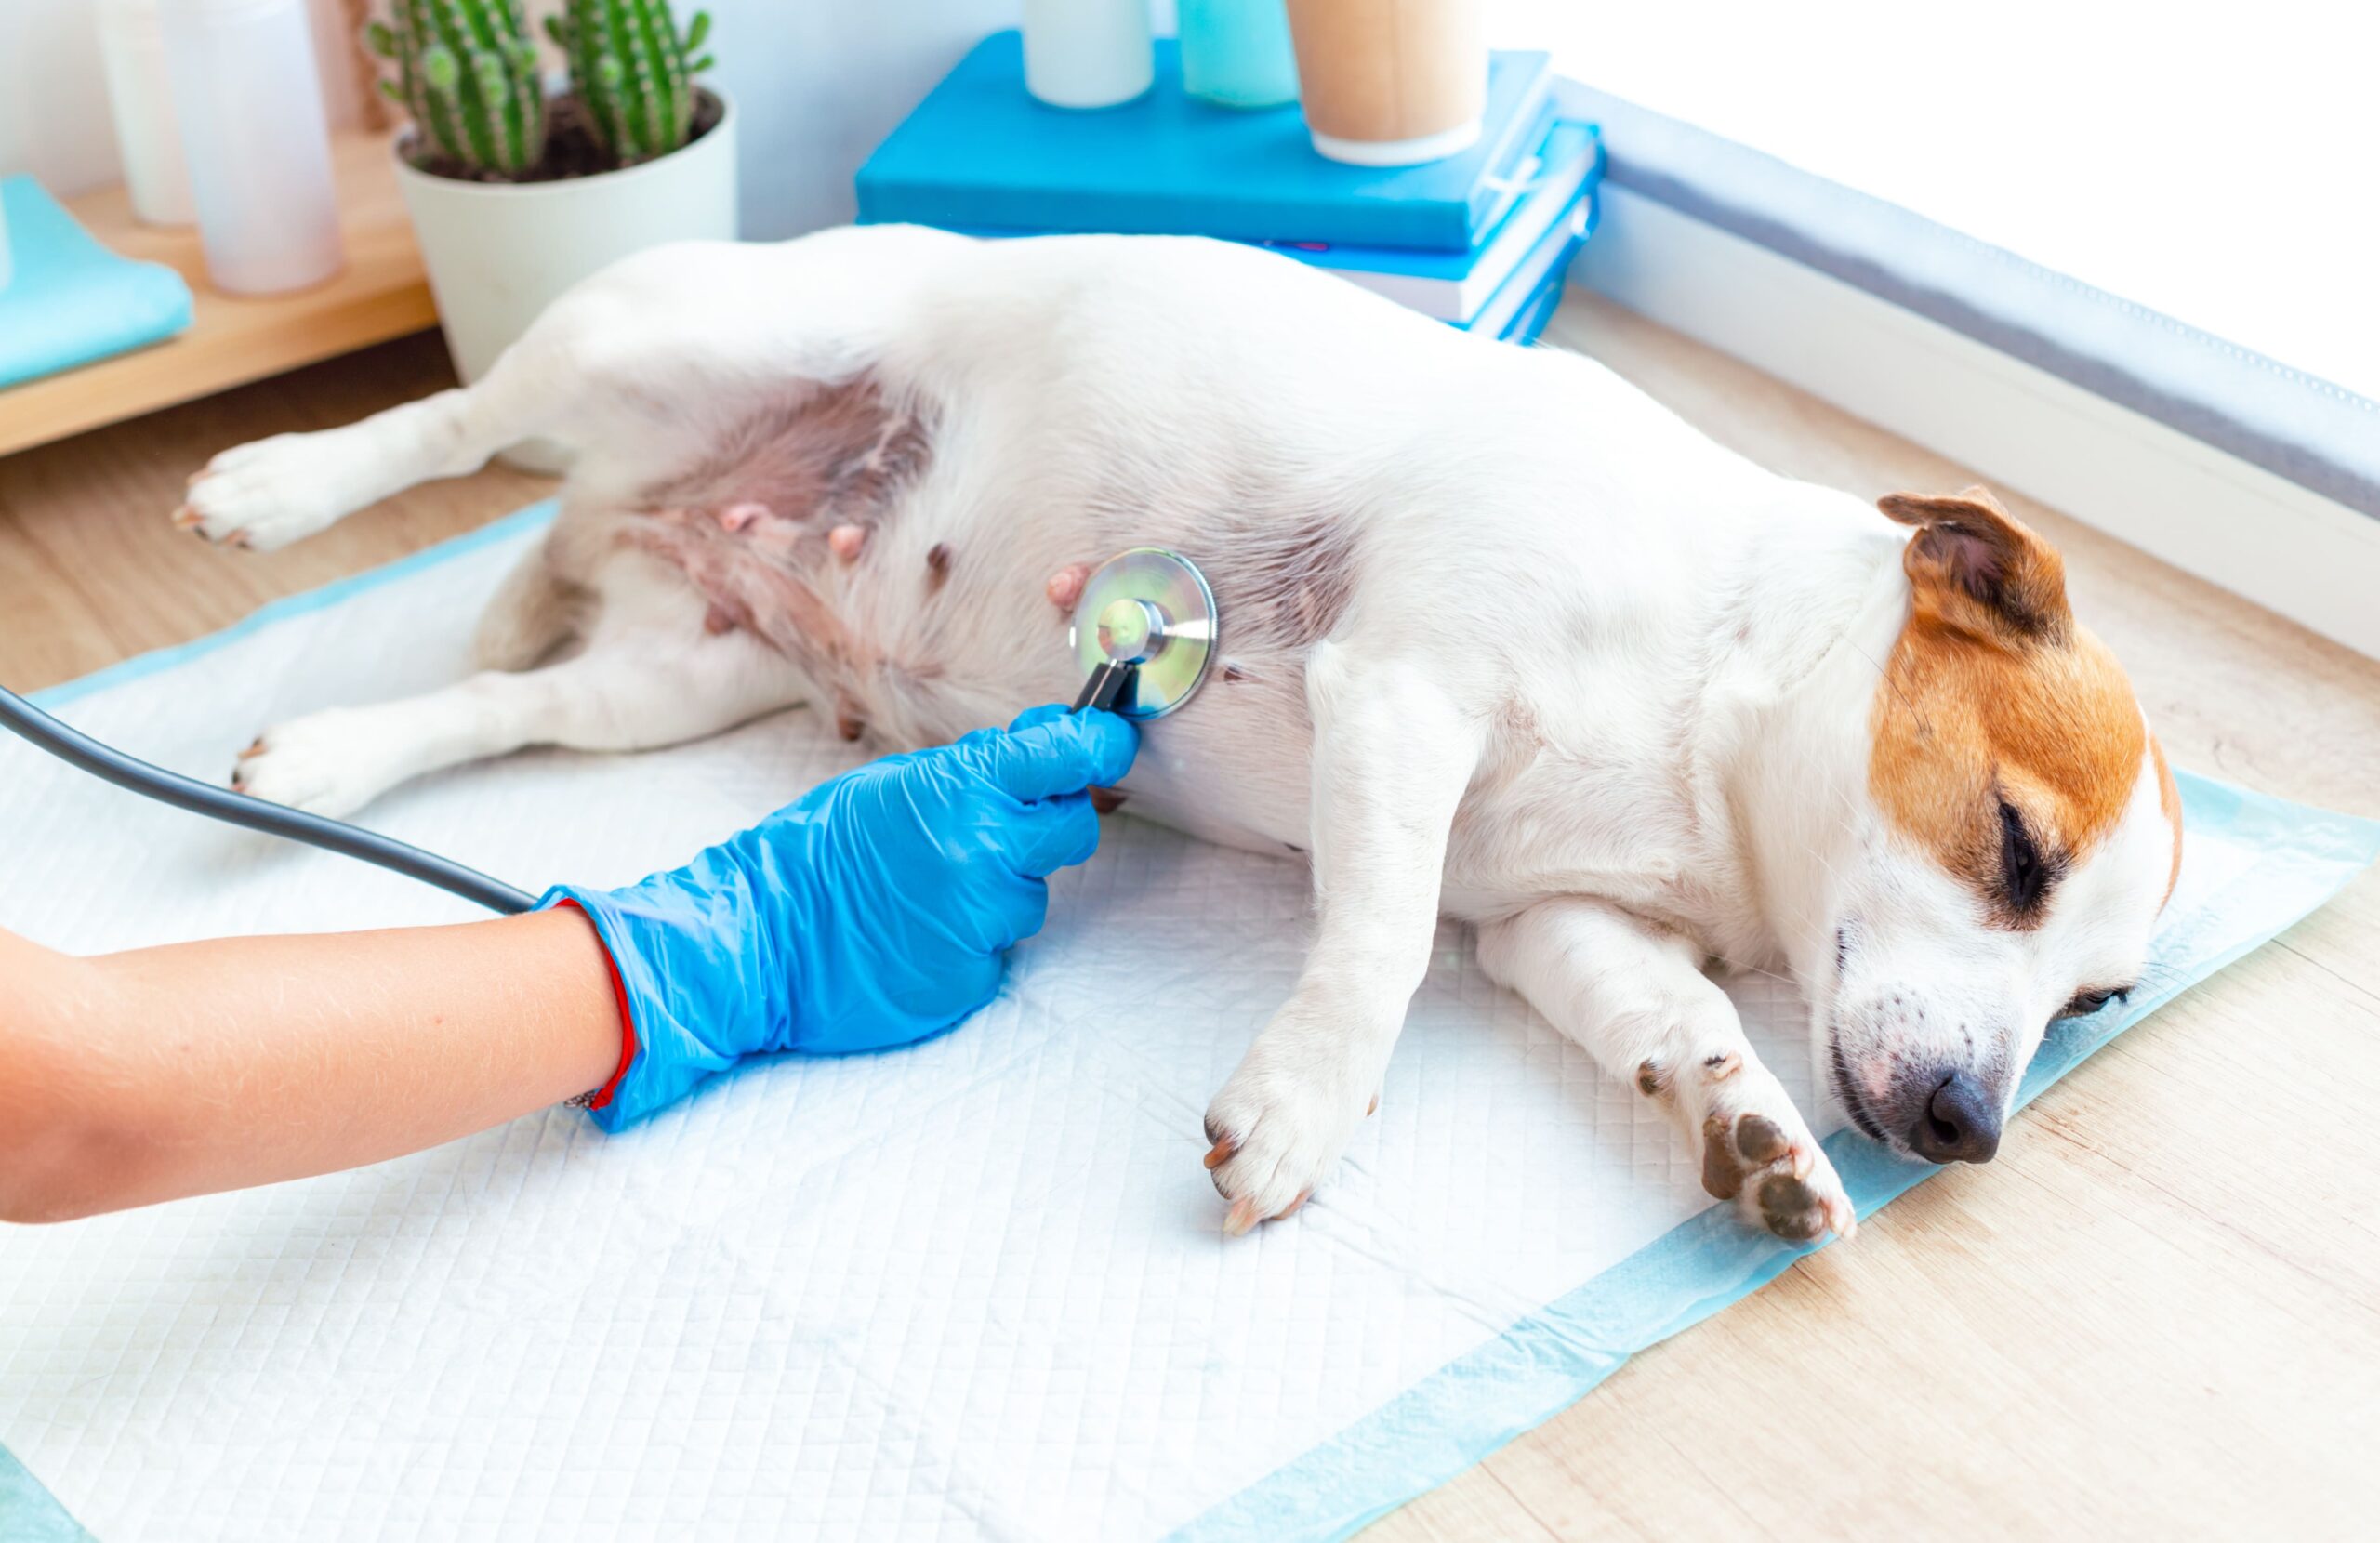 Check-up Pet: exames preventivos ajudam a manter a saúde dos animais de estimação em dia